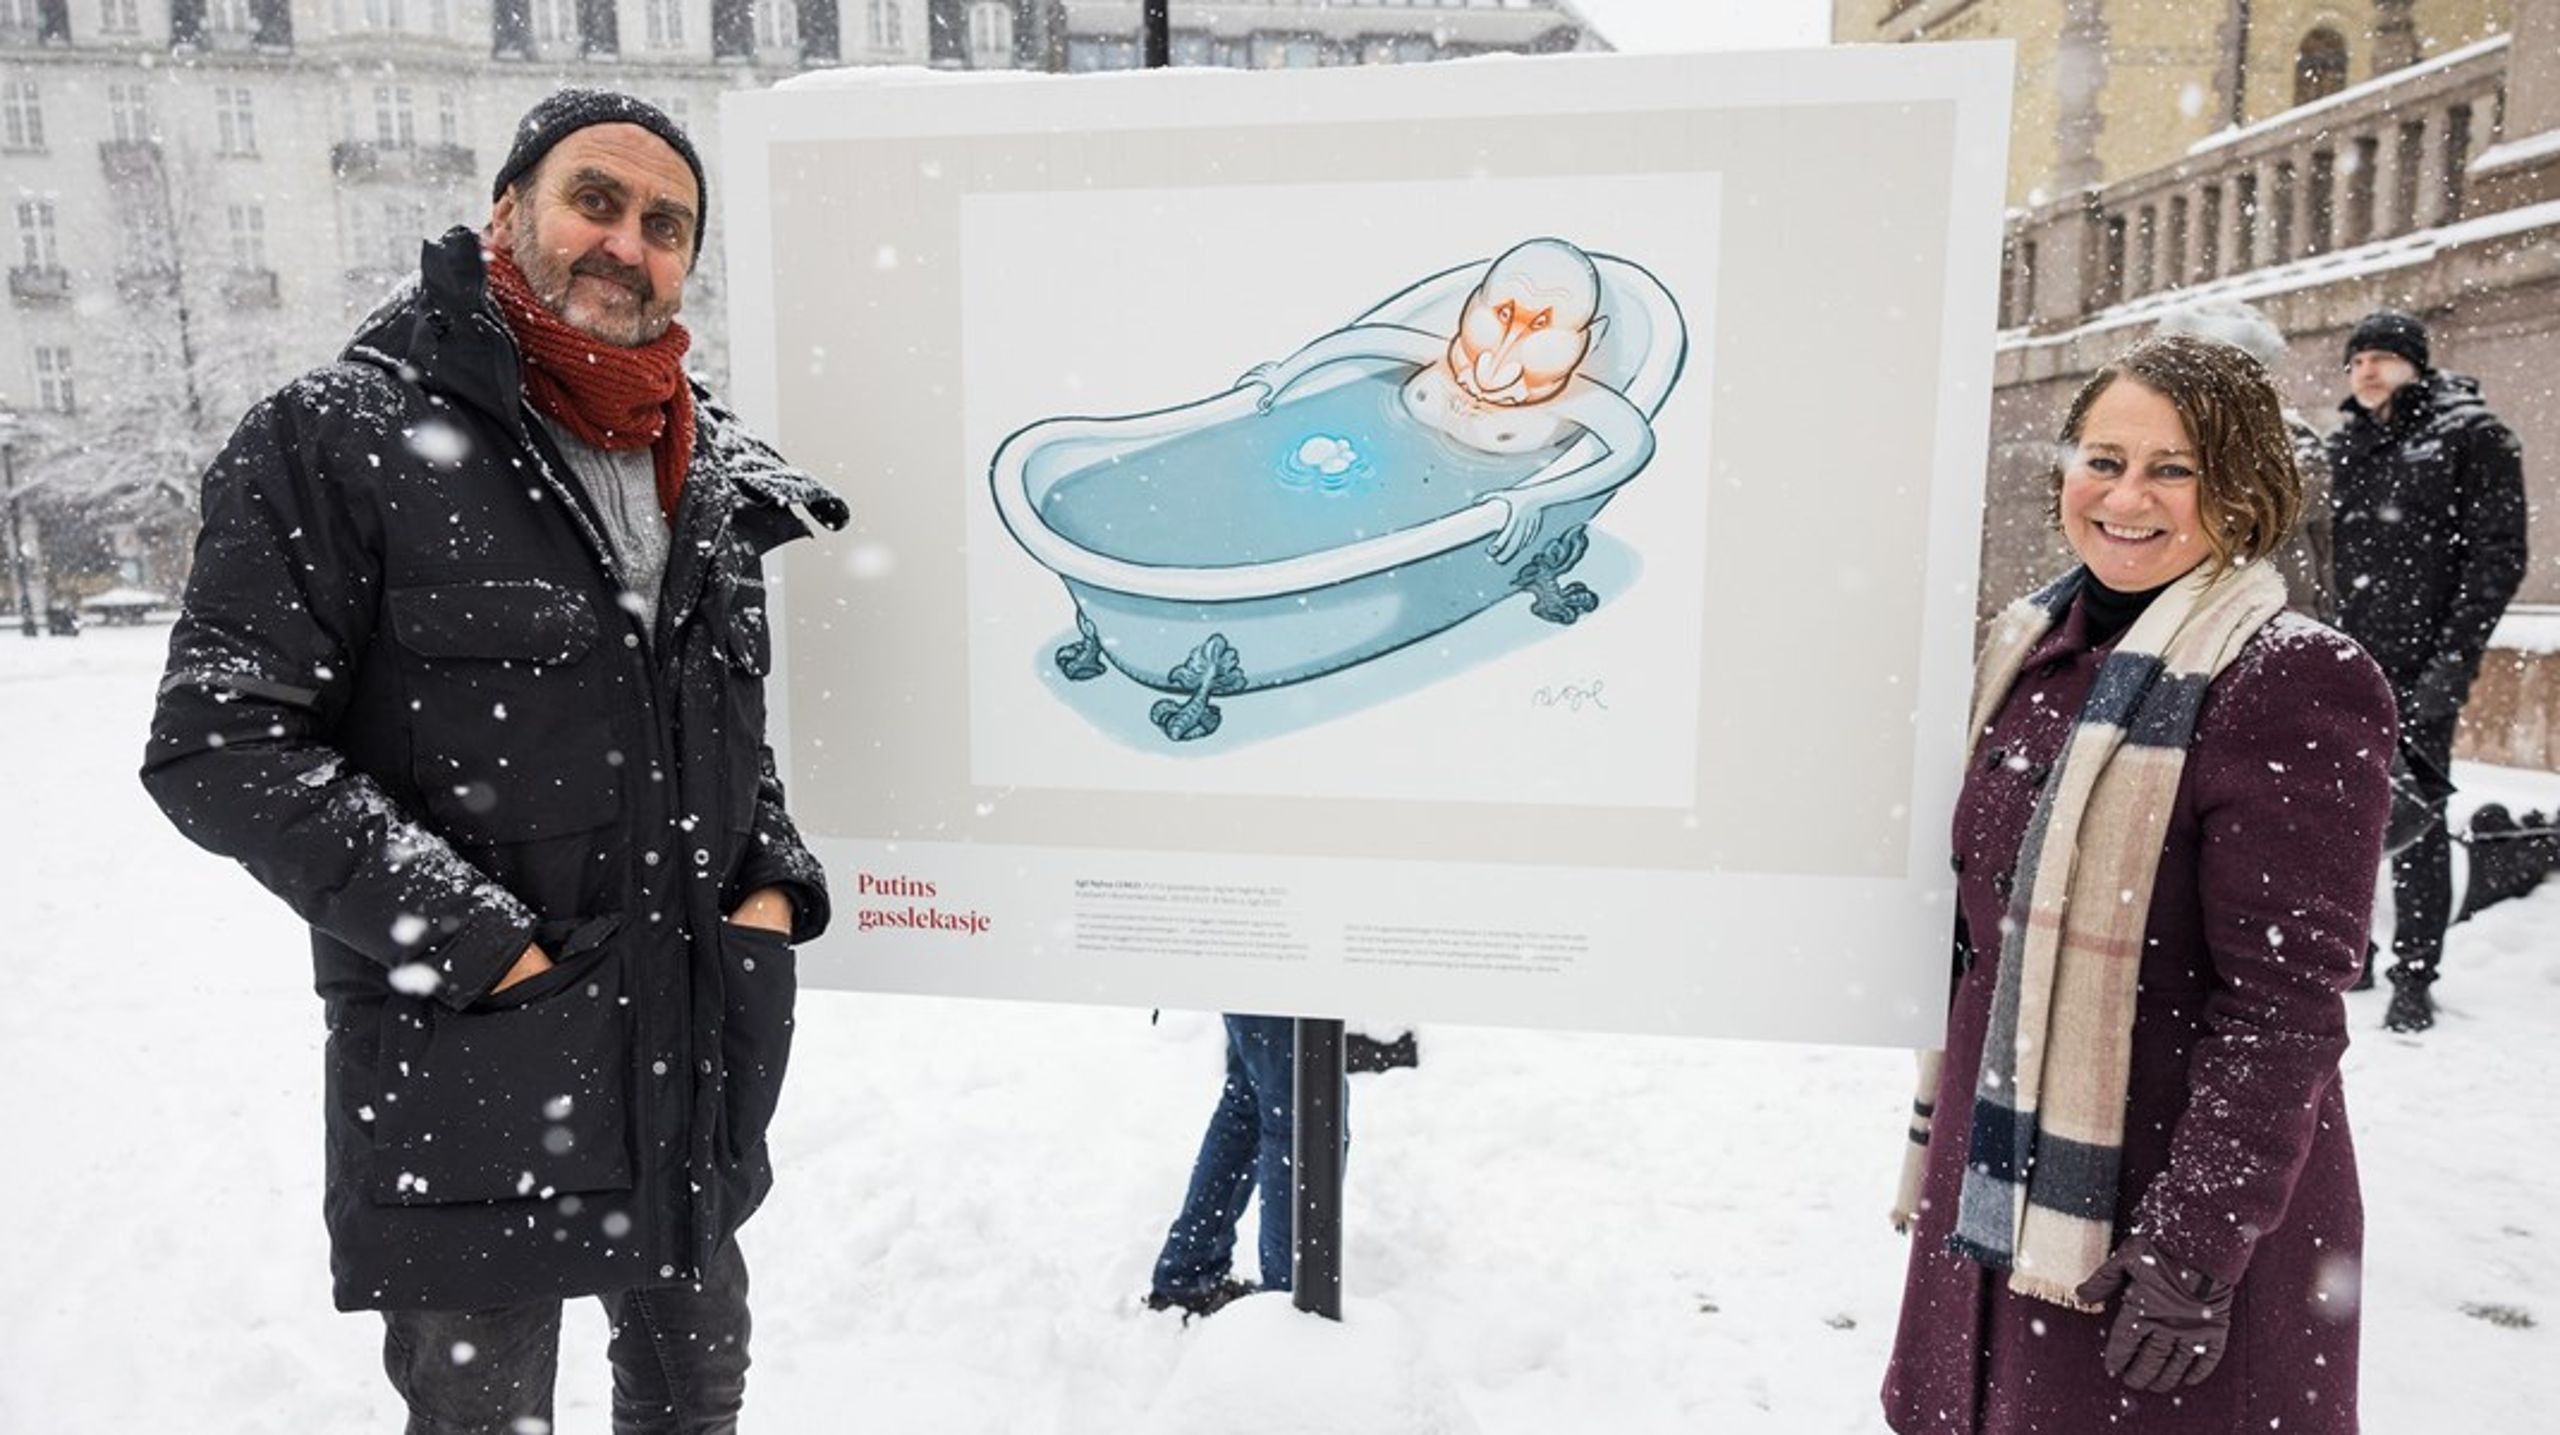 Kunstner Egil Nyhus og leder av Stortingets kunstutvalg Tone Wilhelmsen Trøen (H) foran «Putins Gasslekasje», under åpningen av karikaturutstillingen «Jakta på makta» på Eidsvolls plass.